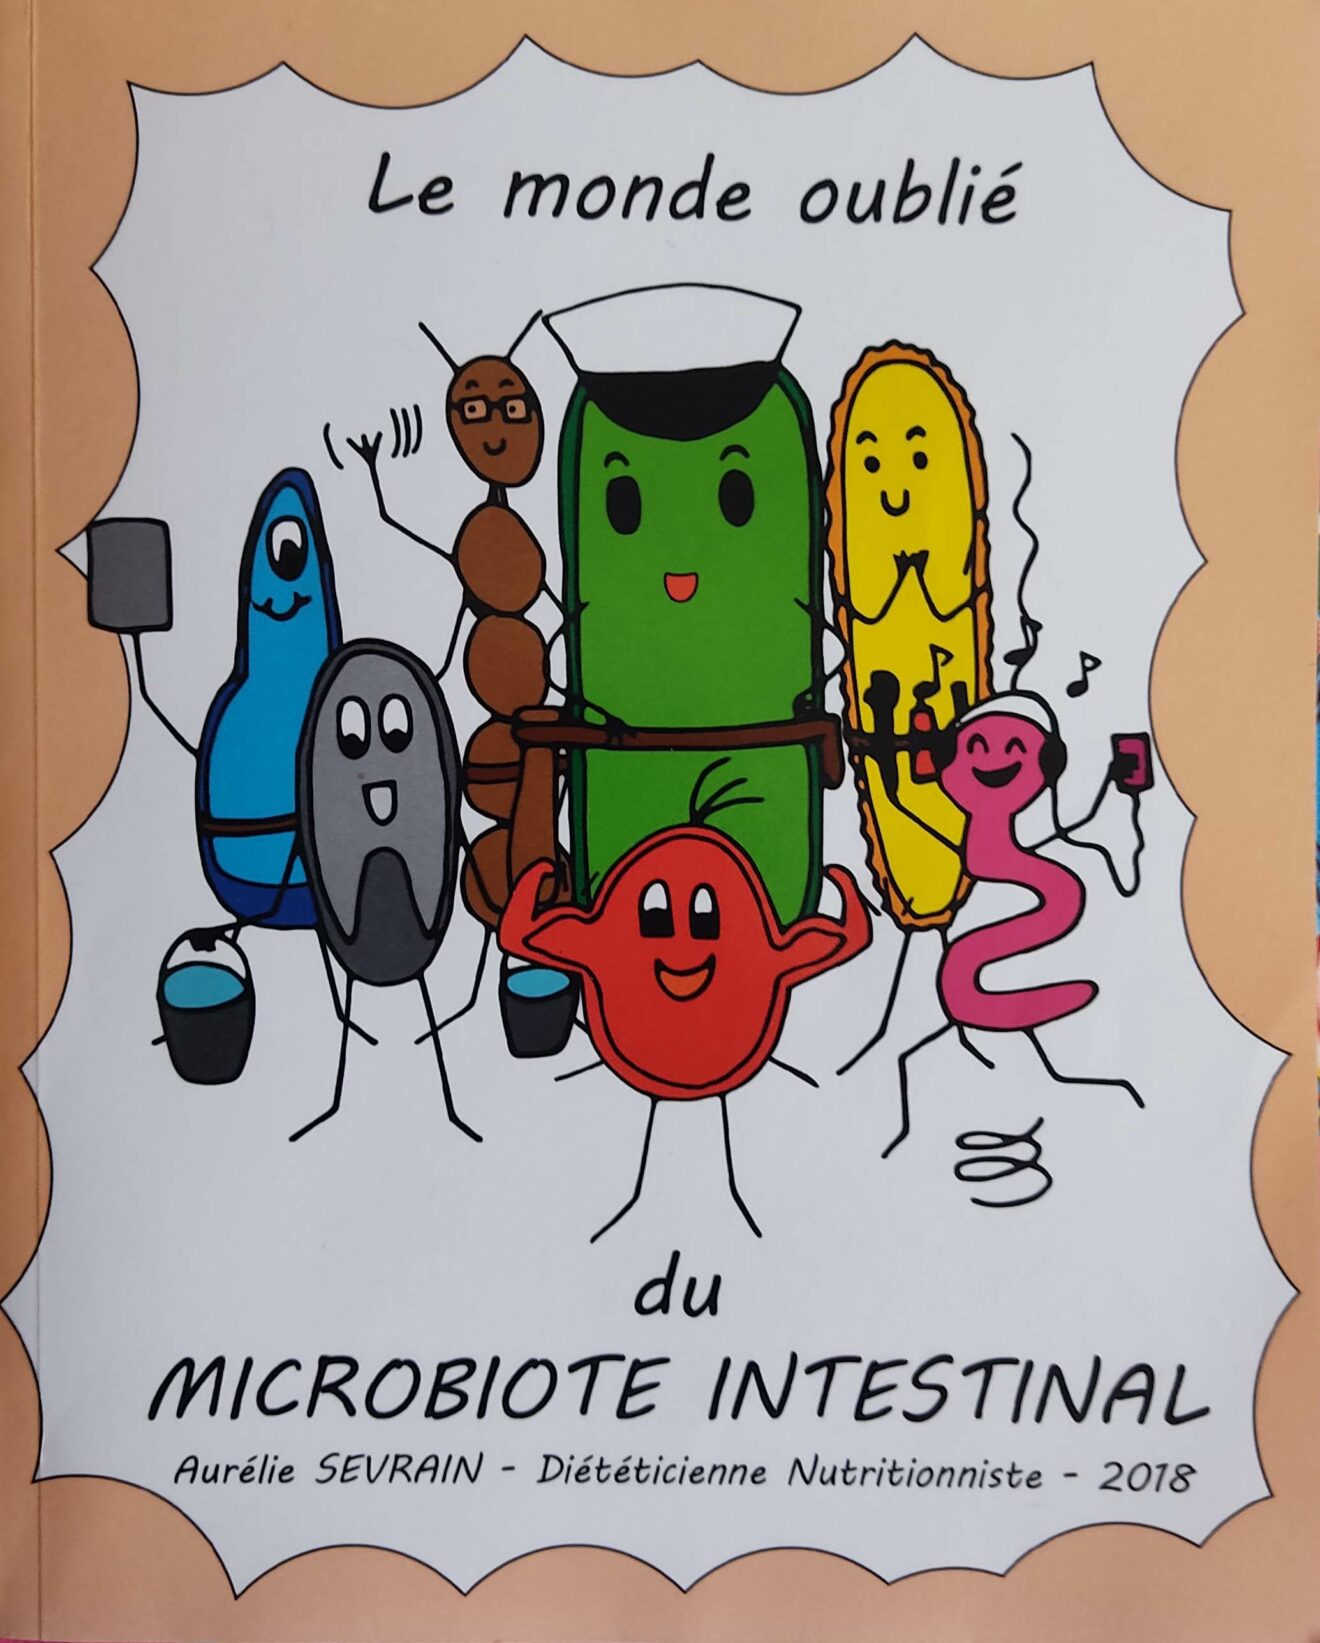 Le monde oublié du Microbiote Intestinal. Auréline Sevrain